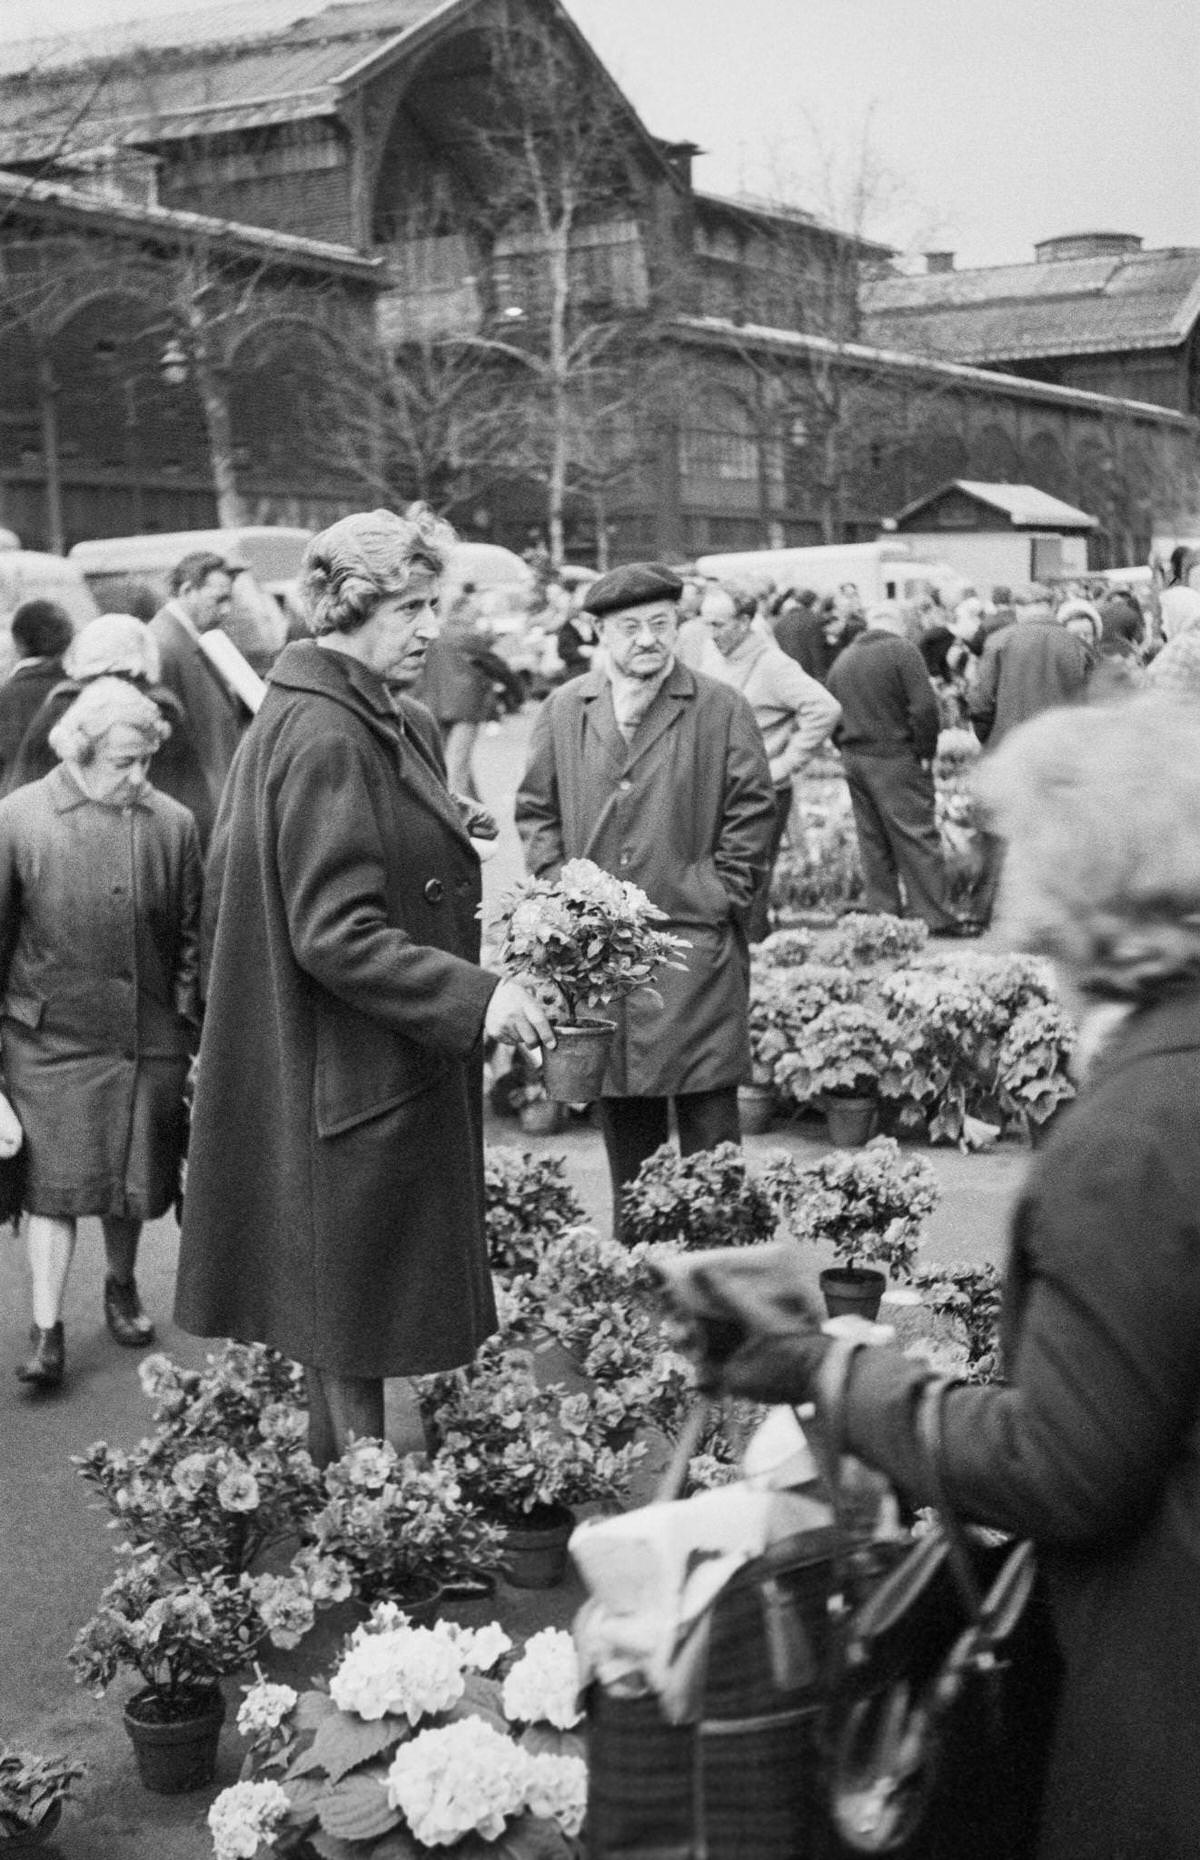 The flower market at Les Halles in Paris, 1969